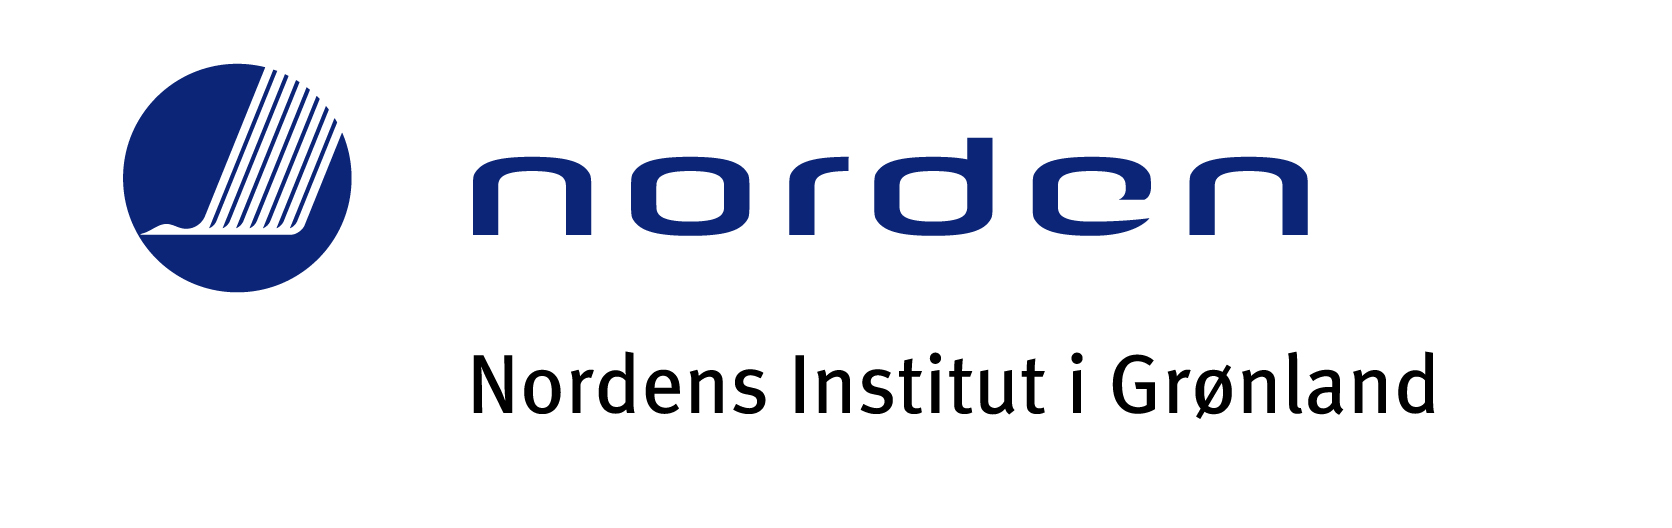 Logo Nordens Institut i Grønland.jpg